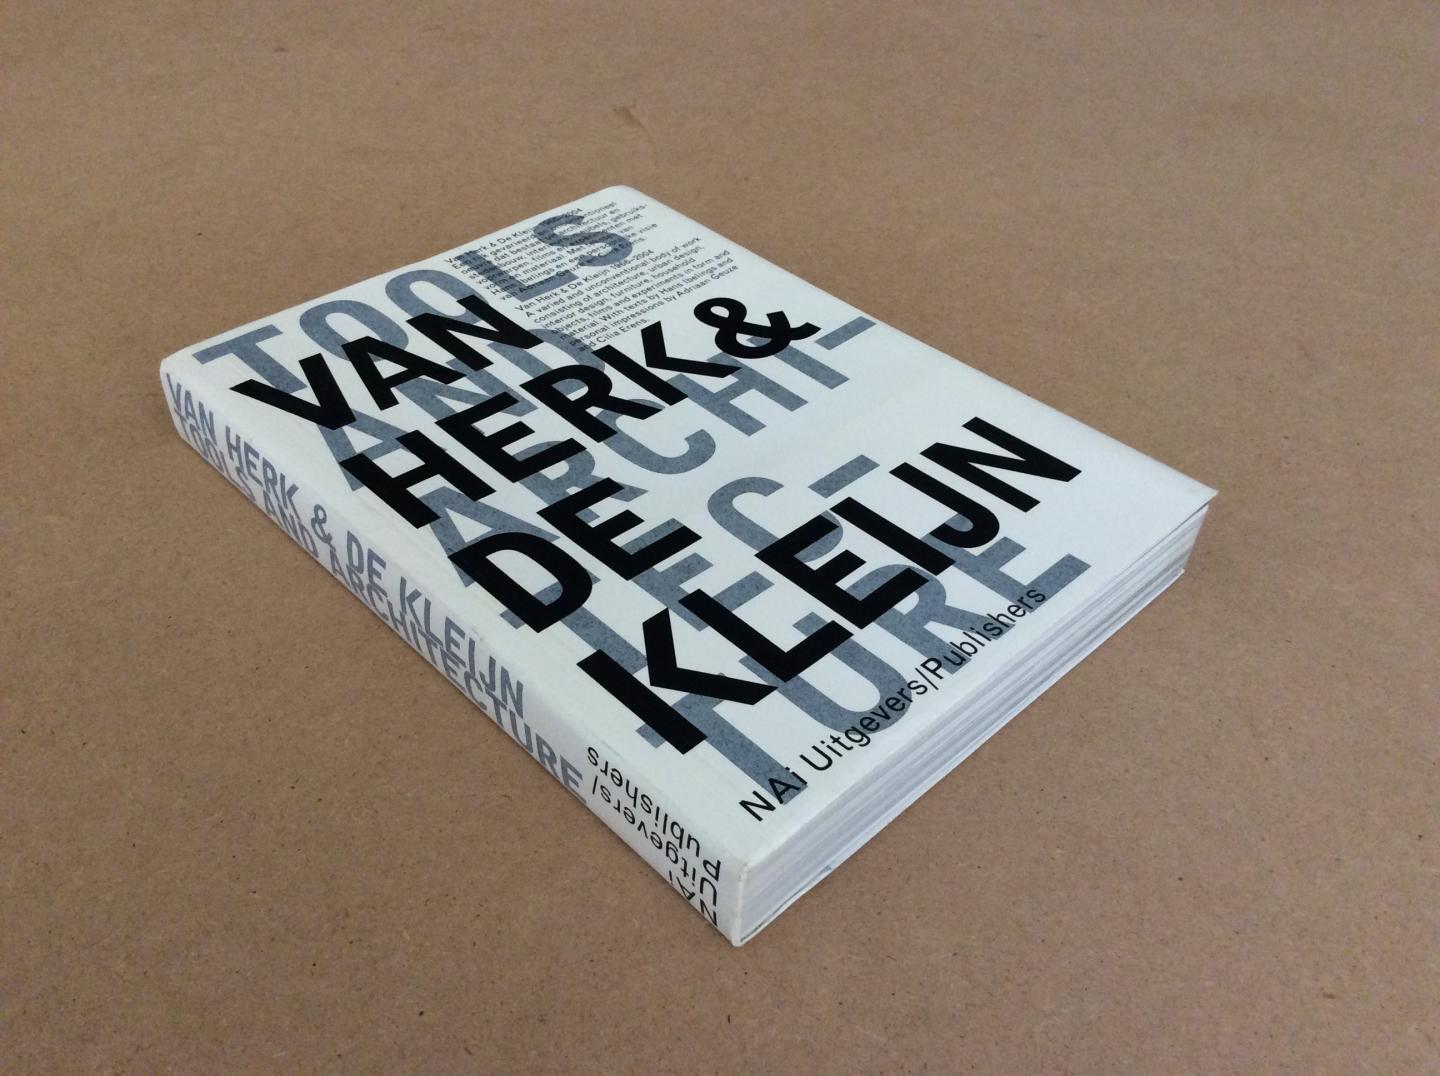 IBELINGS, HANS EA. - Van Herk & De Kleijn 1966-2004. Tools and Architecture